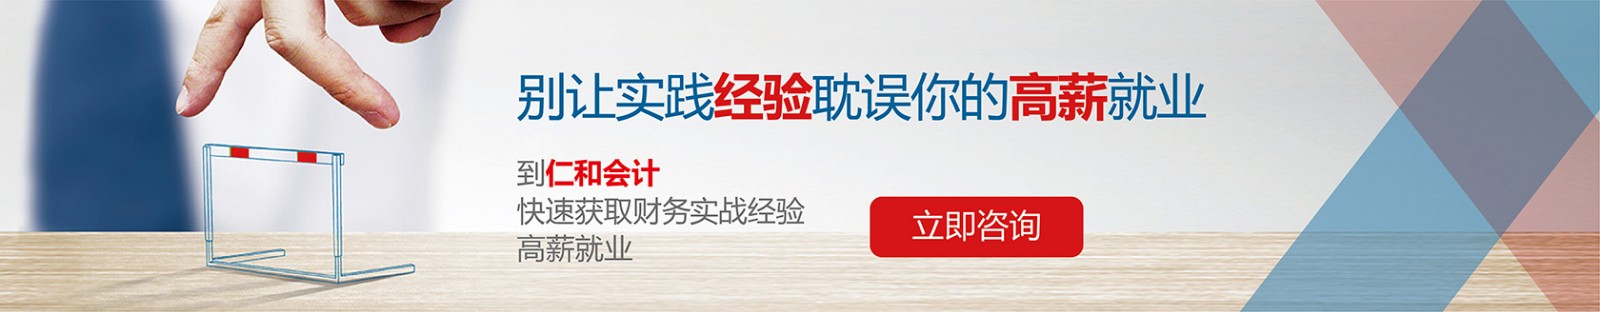 北京仁和会计培训学校 横幅广告